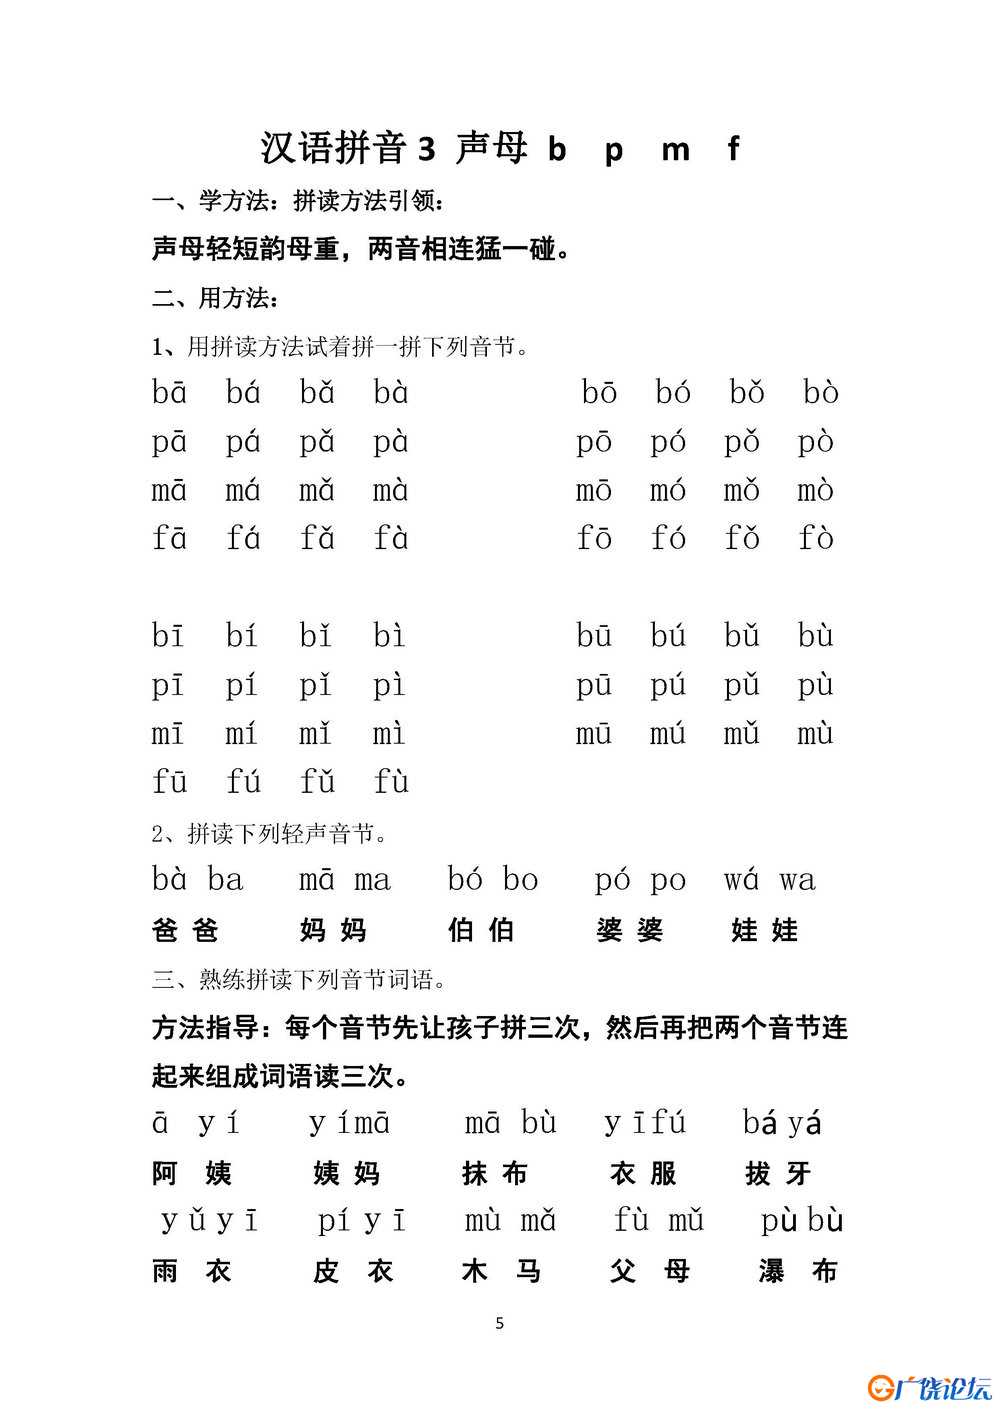 星级拼读天天练 22页PDF